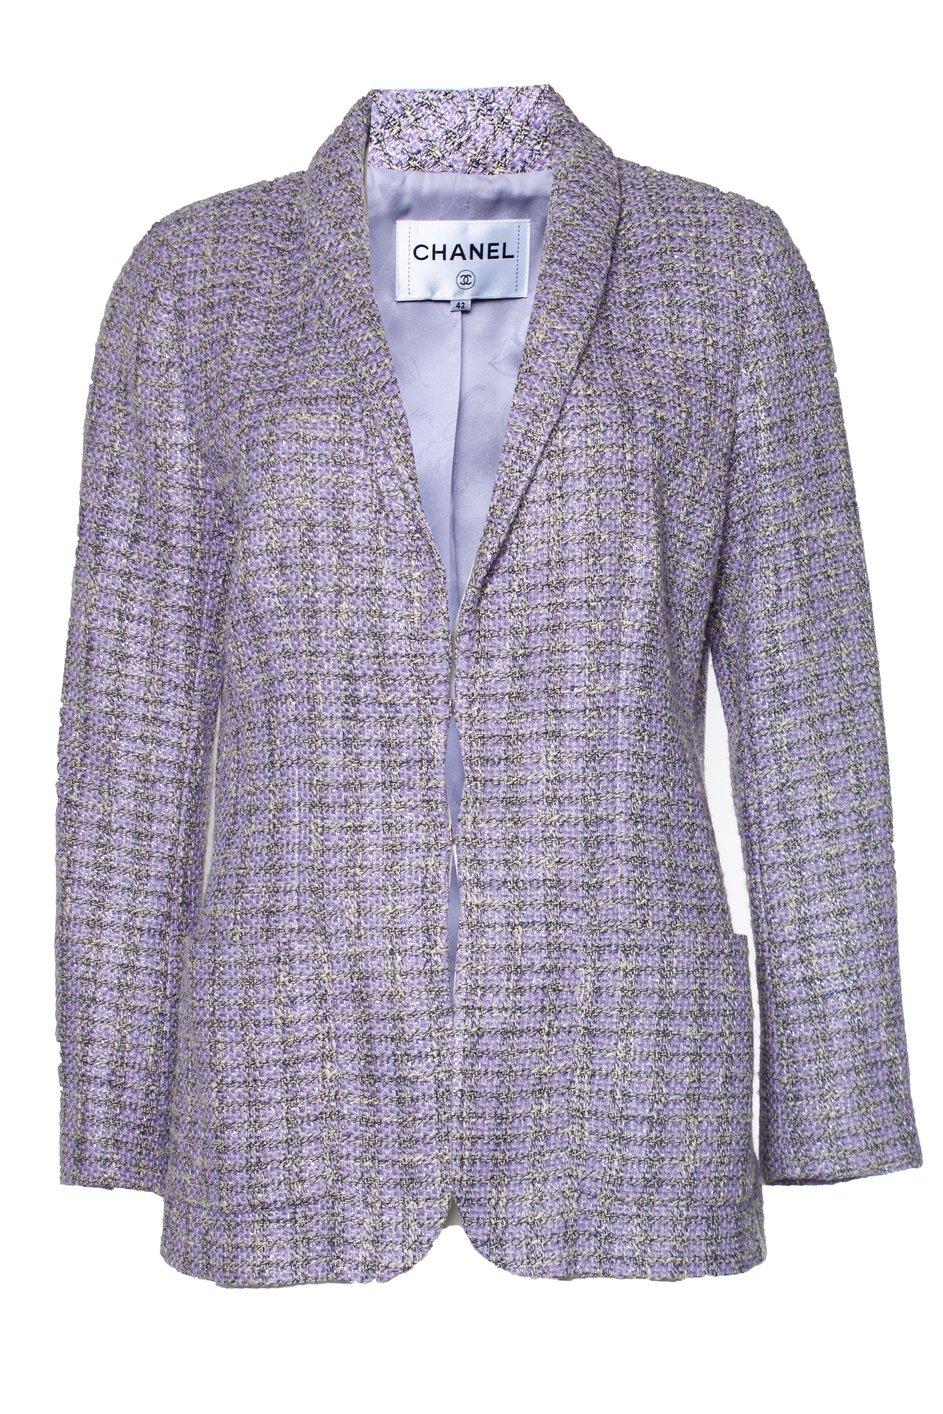 Charmante Chanel Jacke aus lavendelfarbenem Tweed mit silberfarbenen Knöpfen mit CC-Logo aus der AIRPORT-Kollektion
Größenbezeichnung 42 FR. Der Zustand ist tadellos.